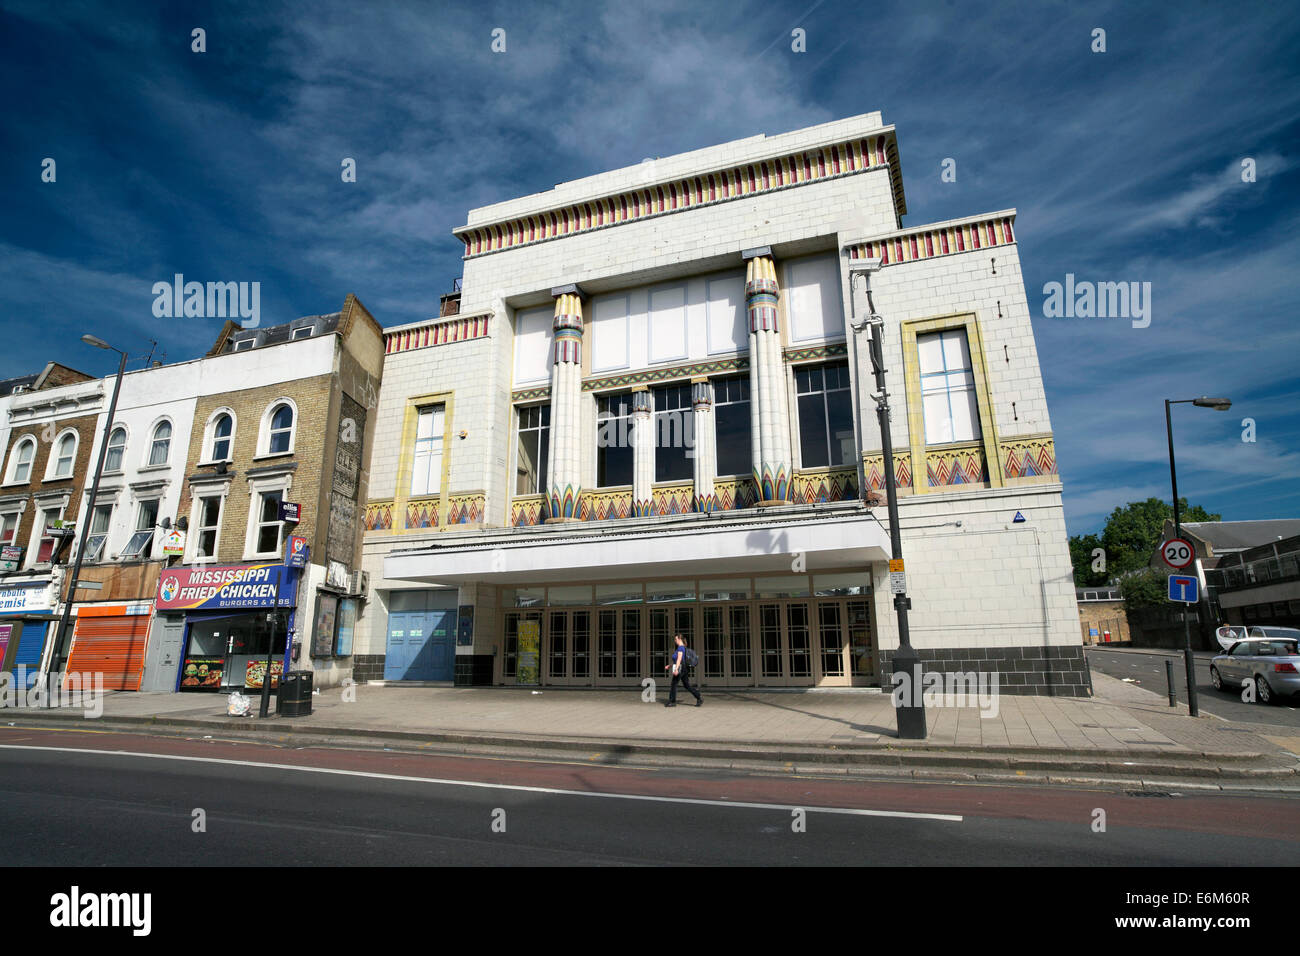 L'ancien cinéma Art Déco Carlton sur Essex Road, Islington, Londres, maintenant utilisé comme une église évangélique. Banque D'Images